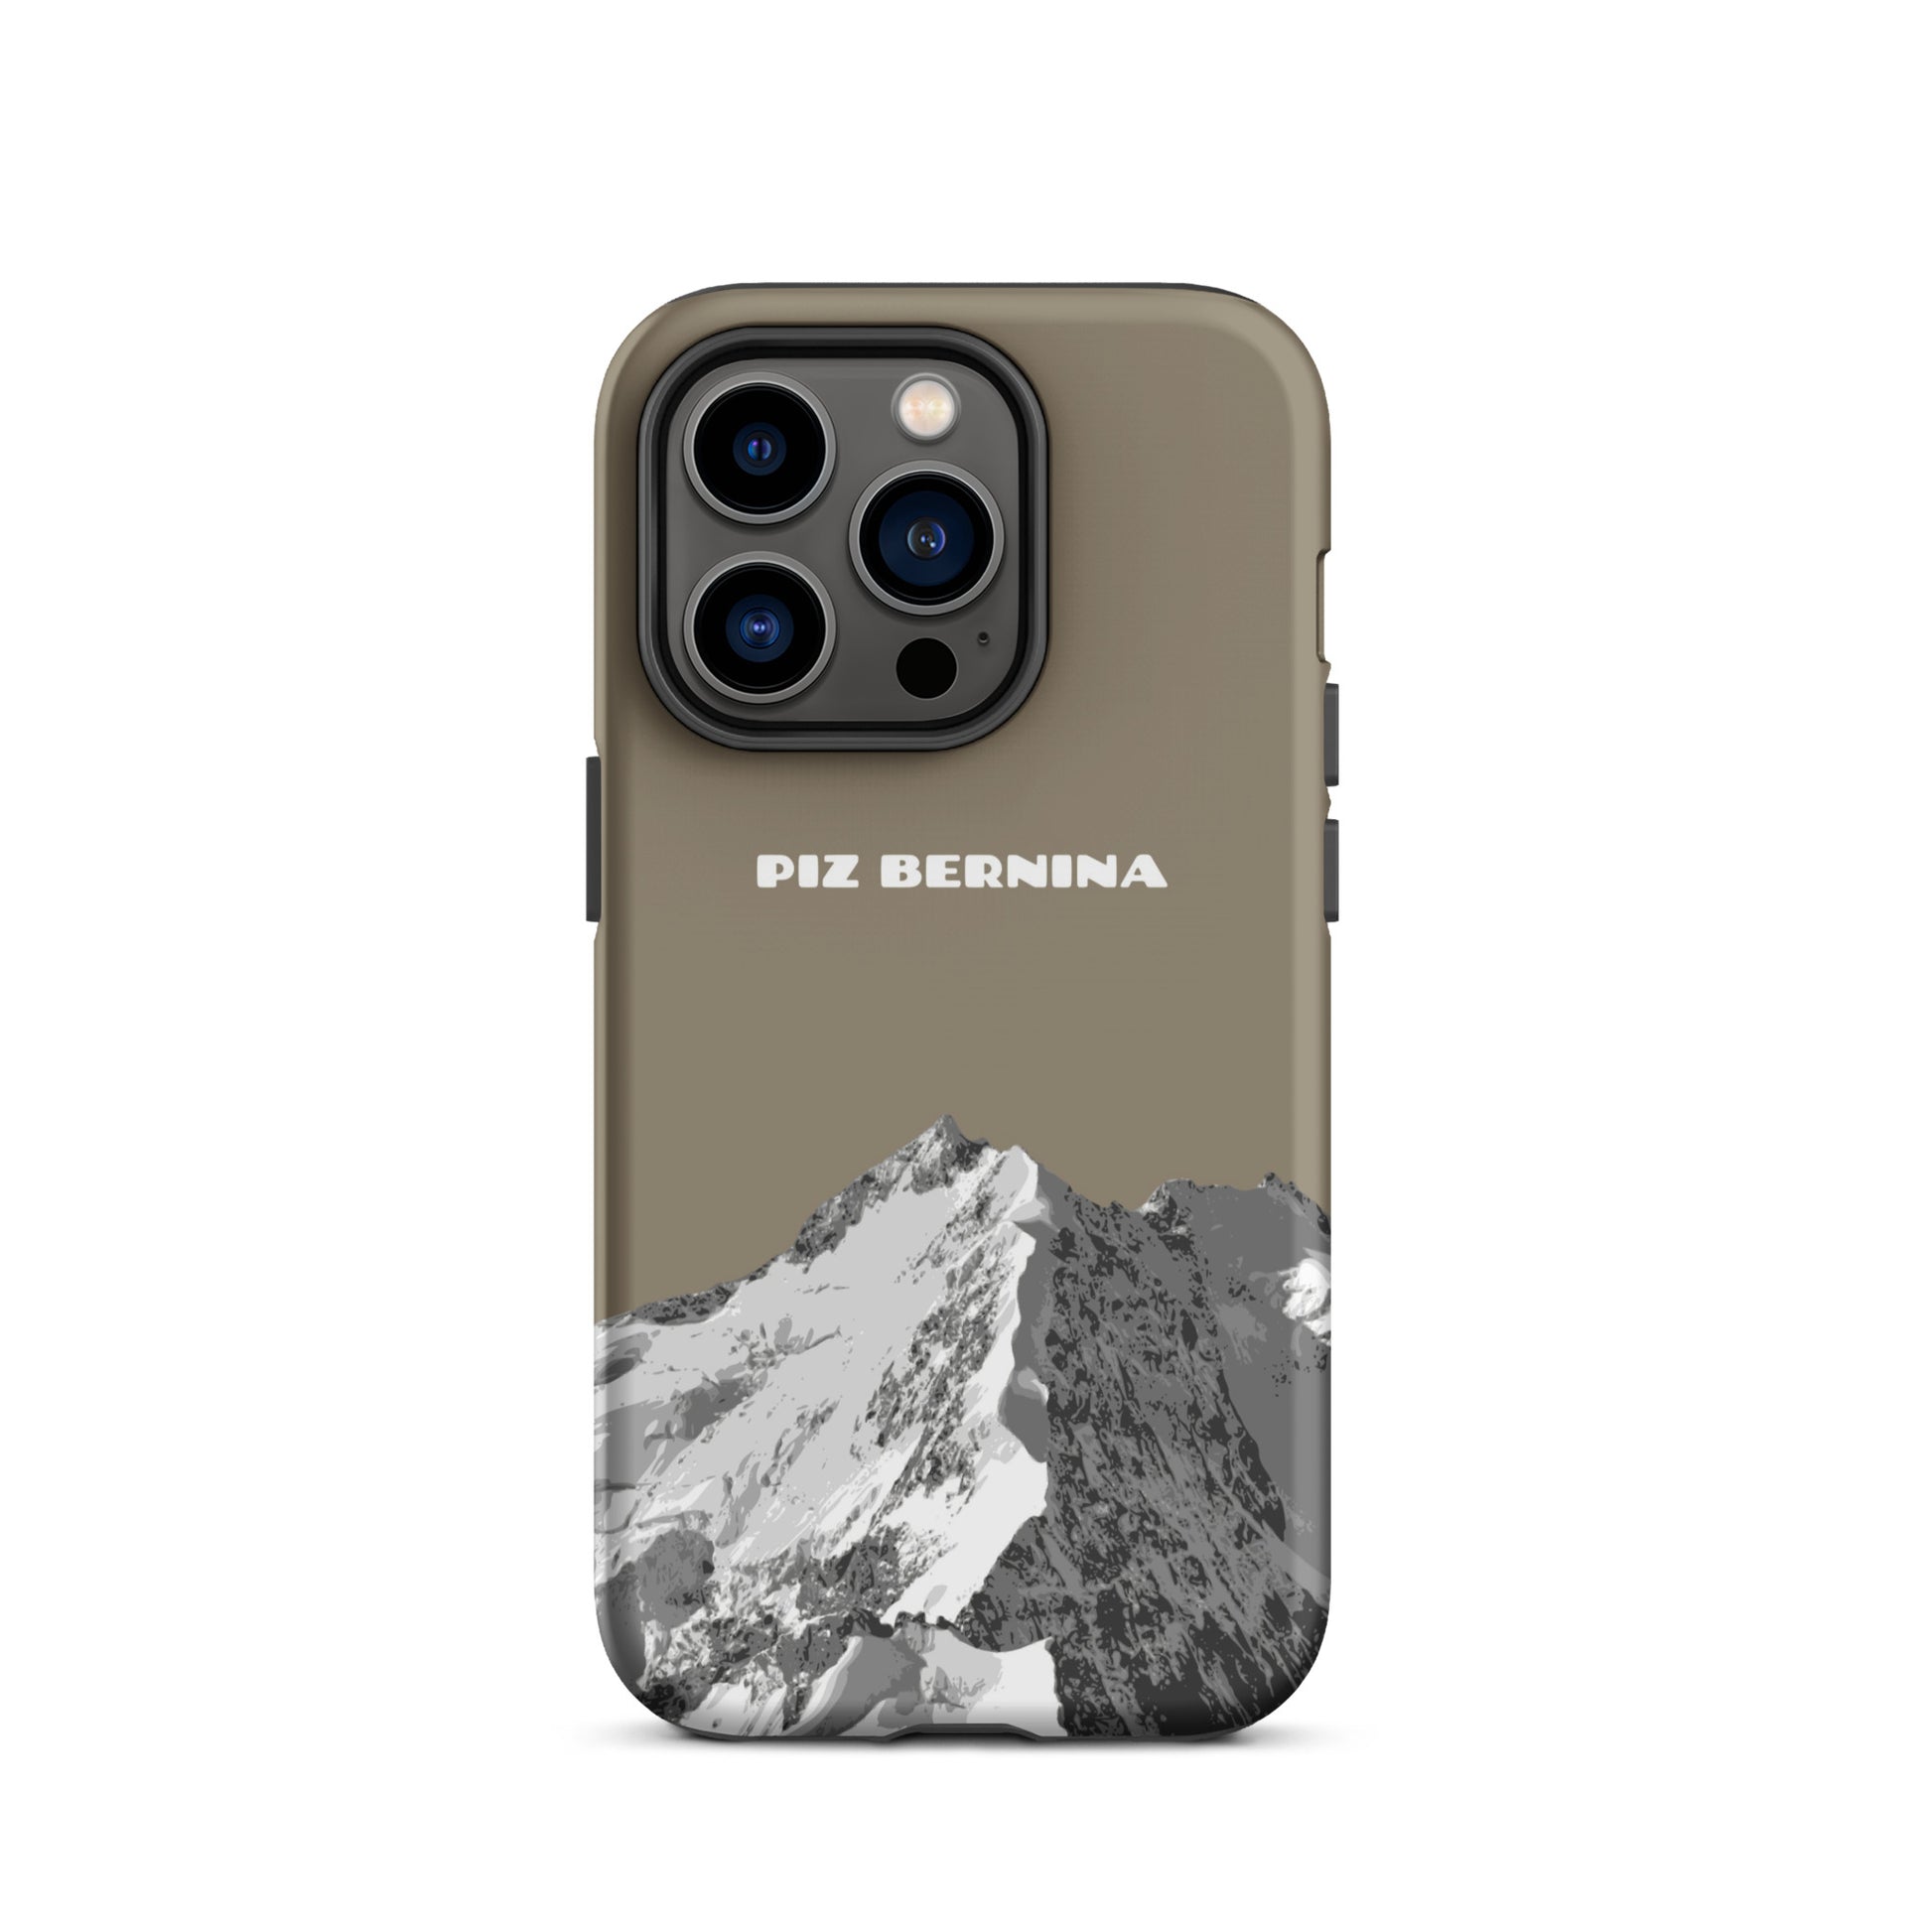 Hülle für das iPhone 14 Pro von Apple in der Farbe Graubraun, dass den Piz Bernina in Graubünden zeigt.